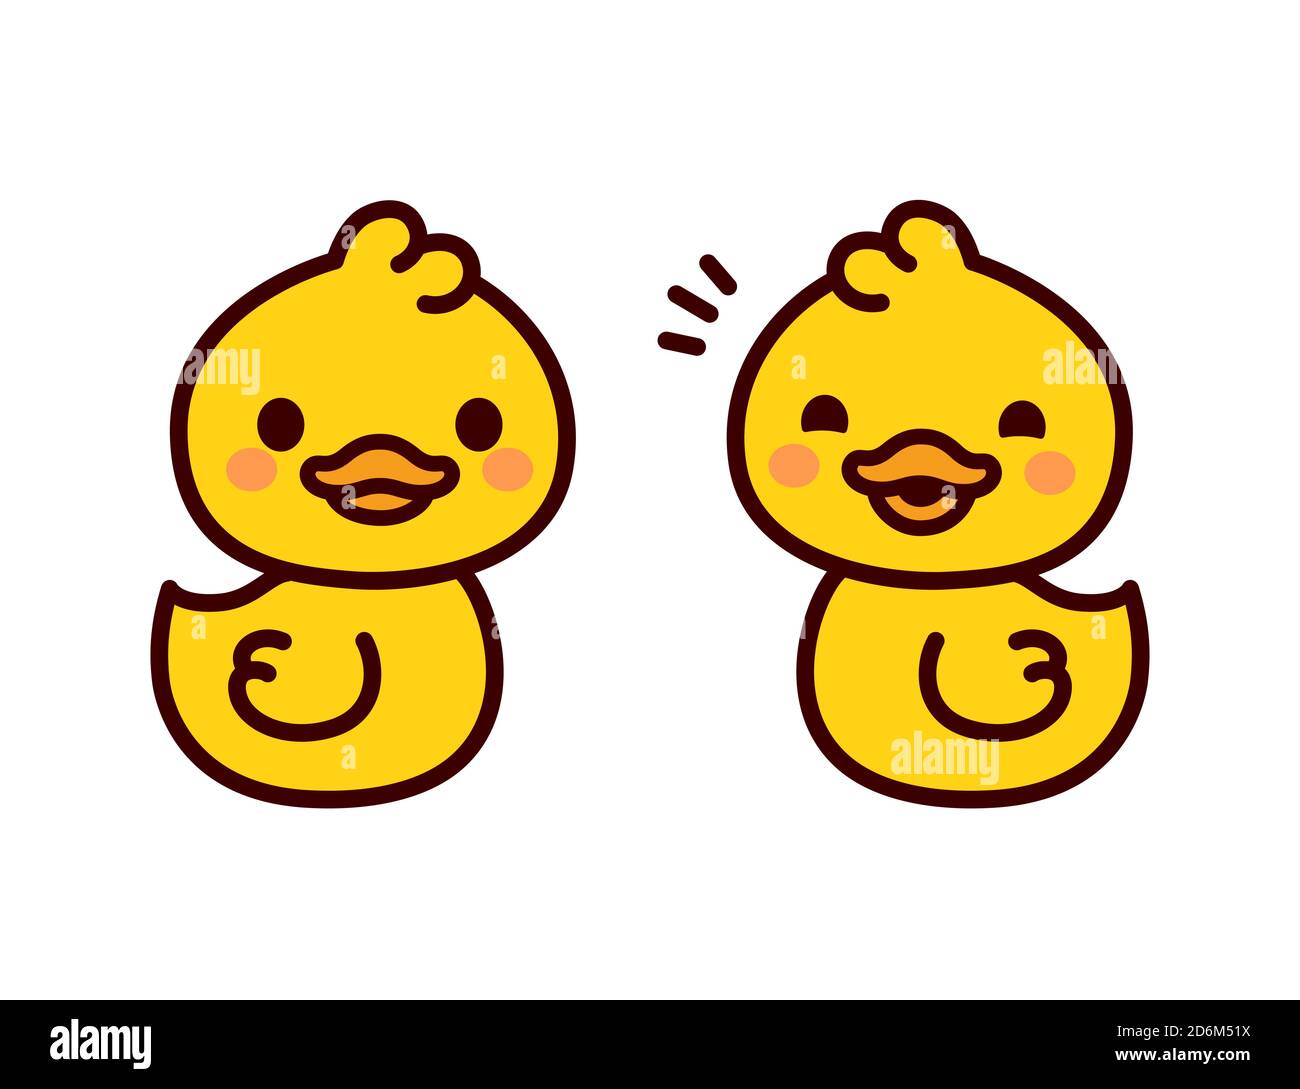 Nette Cartoon Baby Enten. Zwei lustige gelbe Entchen im einfachen Kawaii-Stil. Vektorgrafik Clip Art Illustration. Stock Vektor